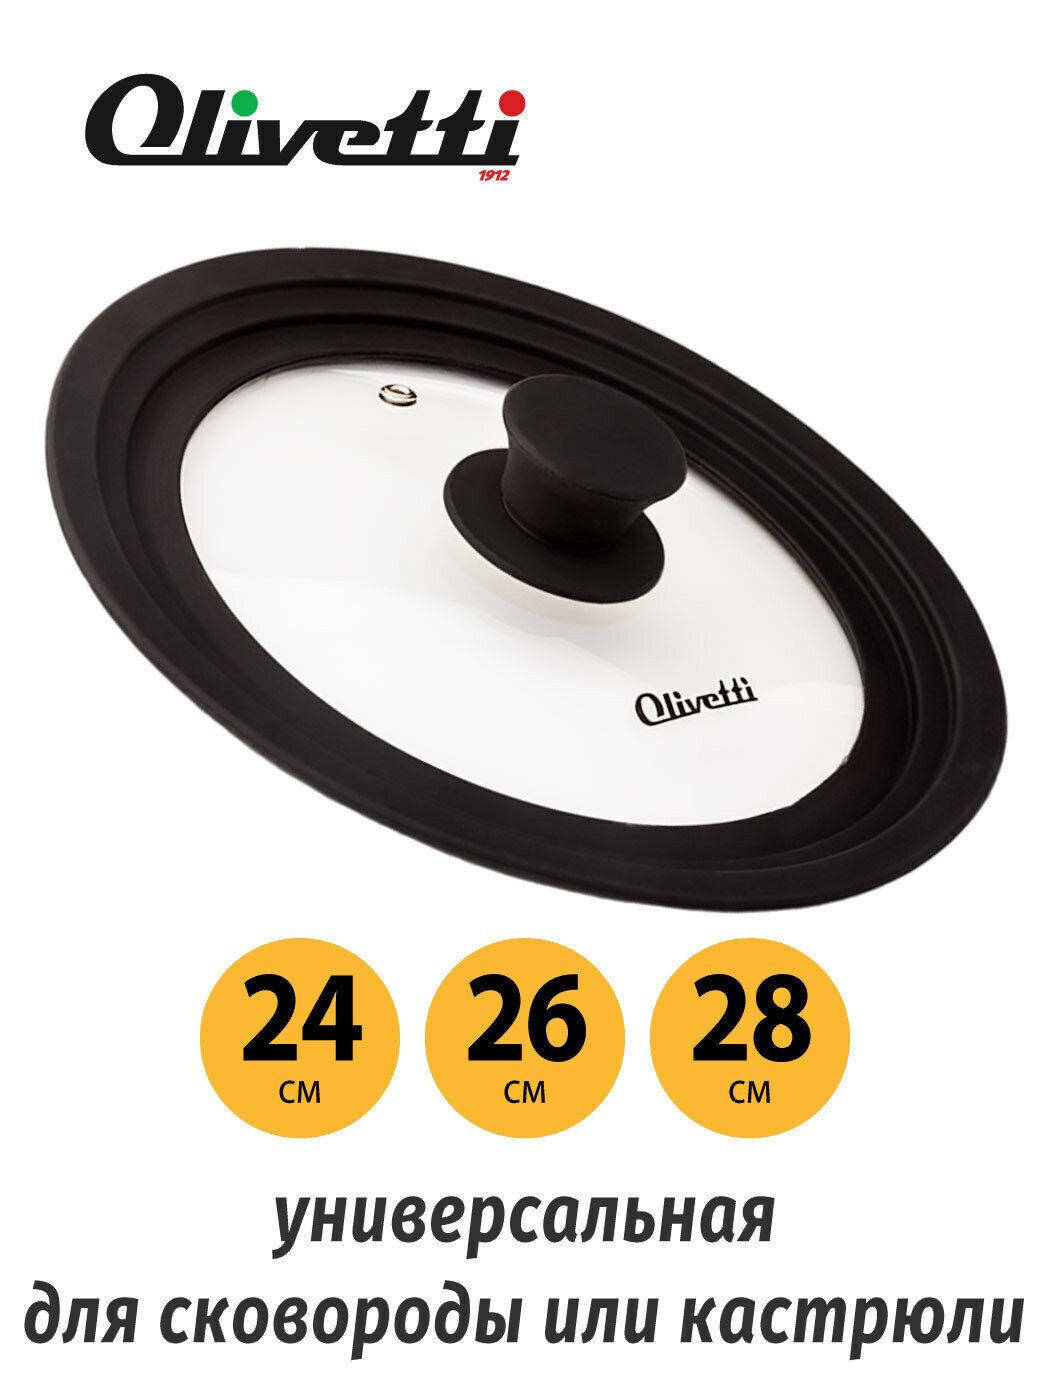 Крышка стеклянная Olivetti GLU24 black универсальная для сковороды и кастрюли диаметра 24, 26, 28 см